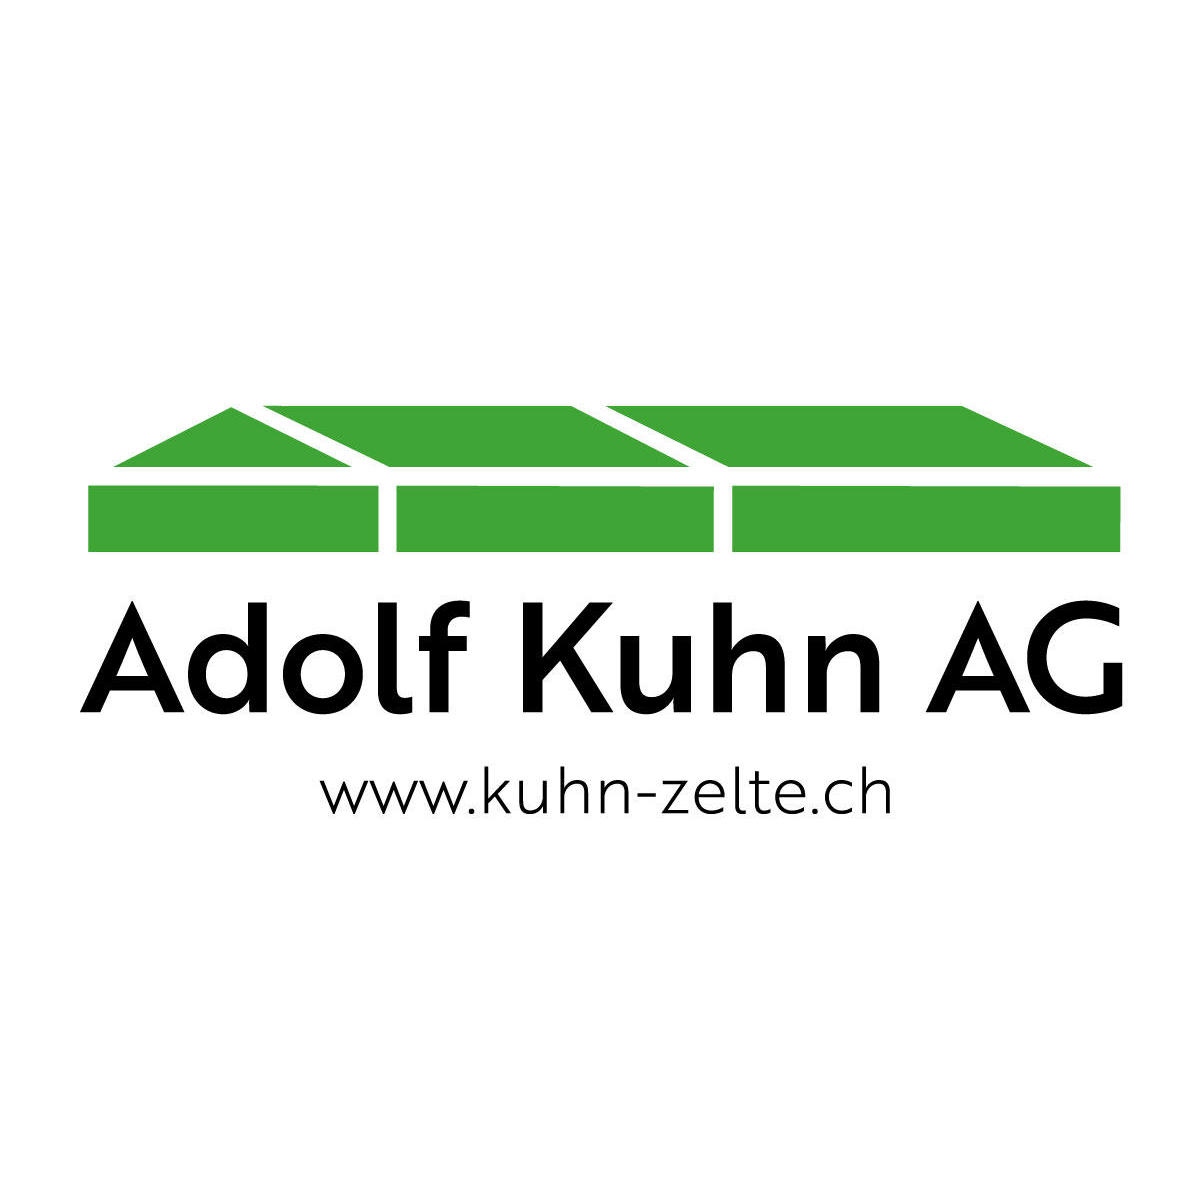 Adolf Kuhn AG Logo